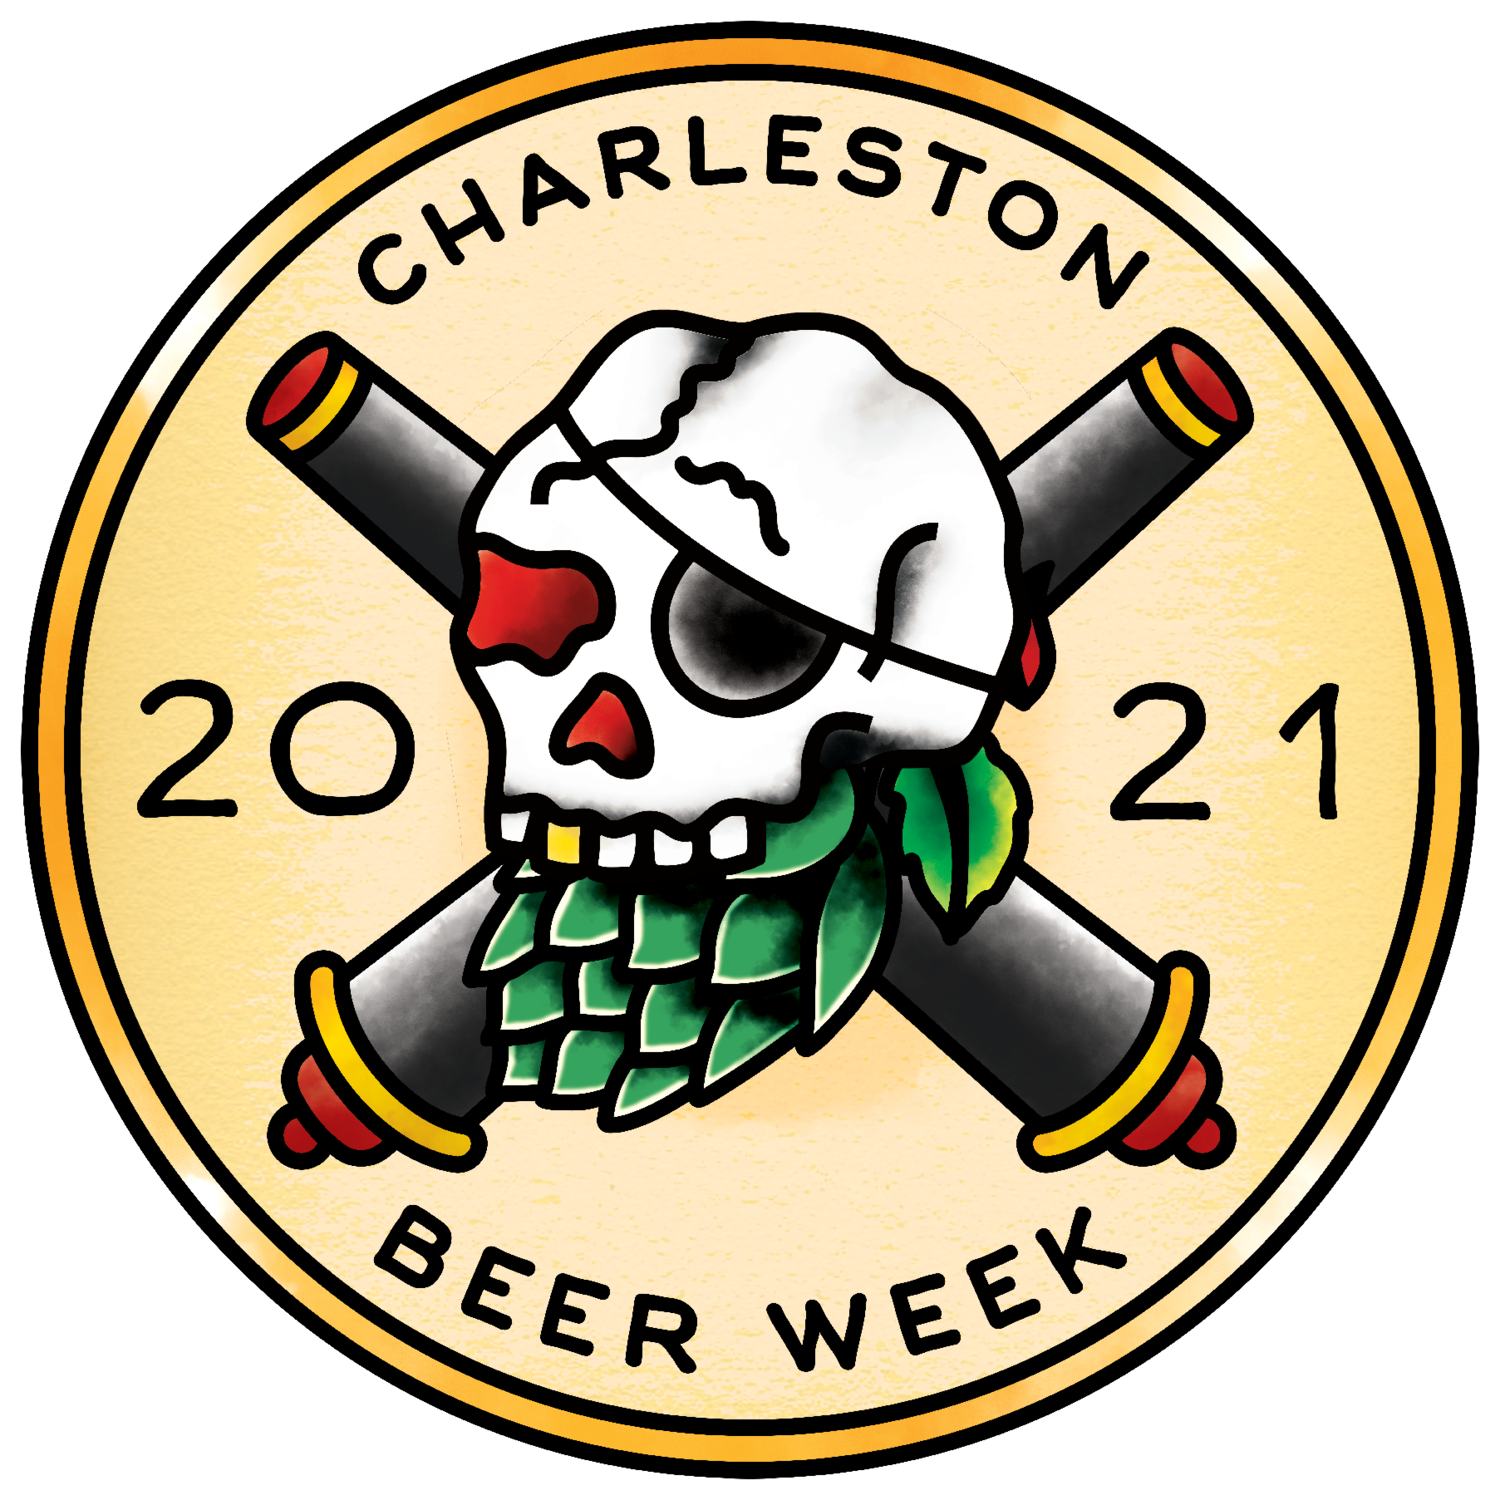 Charleston Beer Week 2021